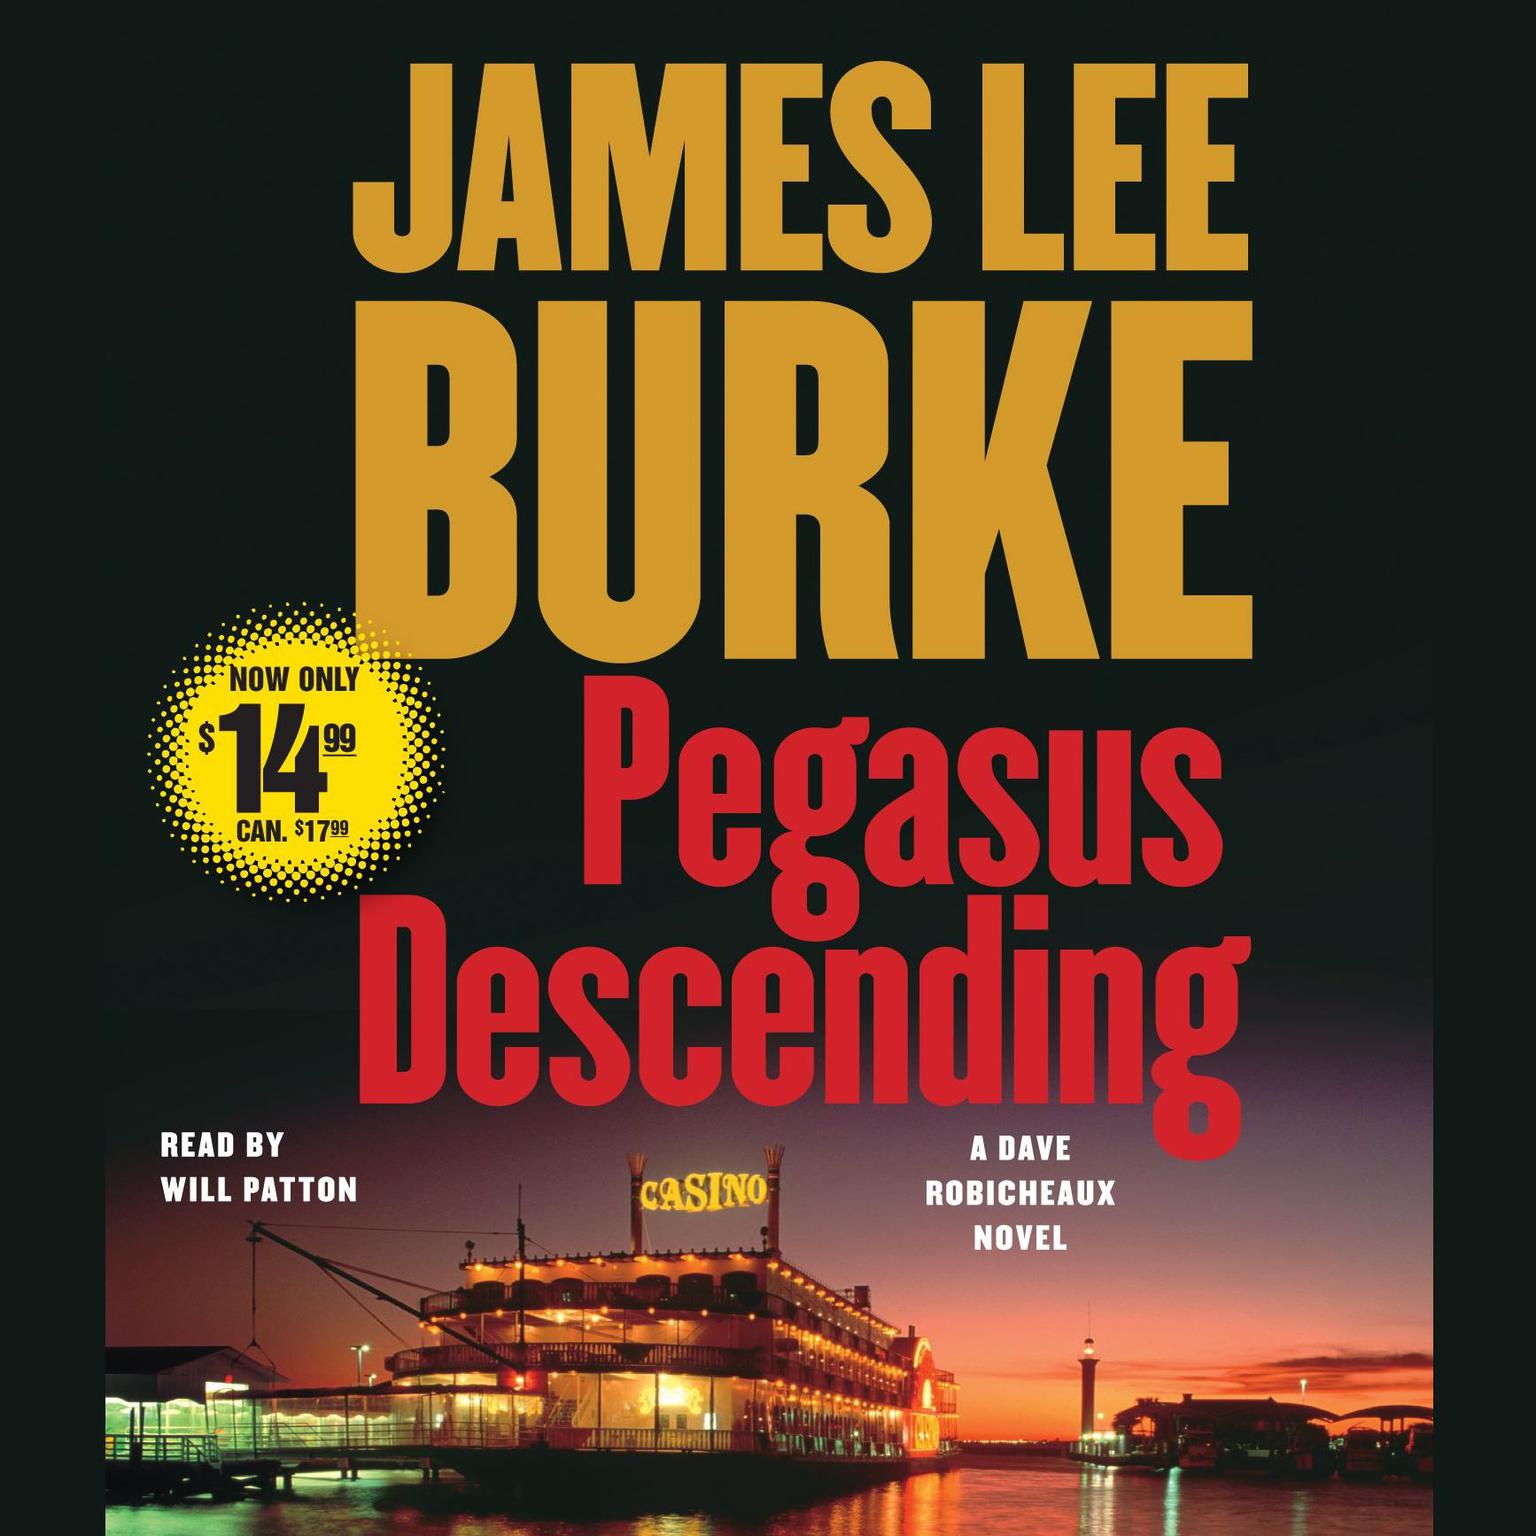 Pegasus Descending (Abridged): A Dave Robicheaux Novel Audiobook, by James Lee Burke